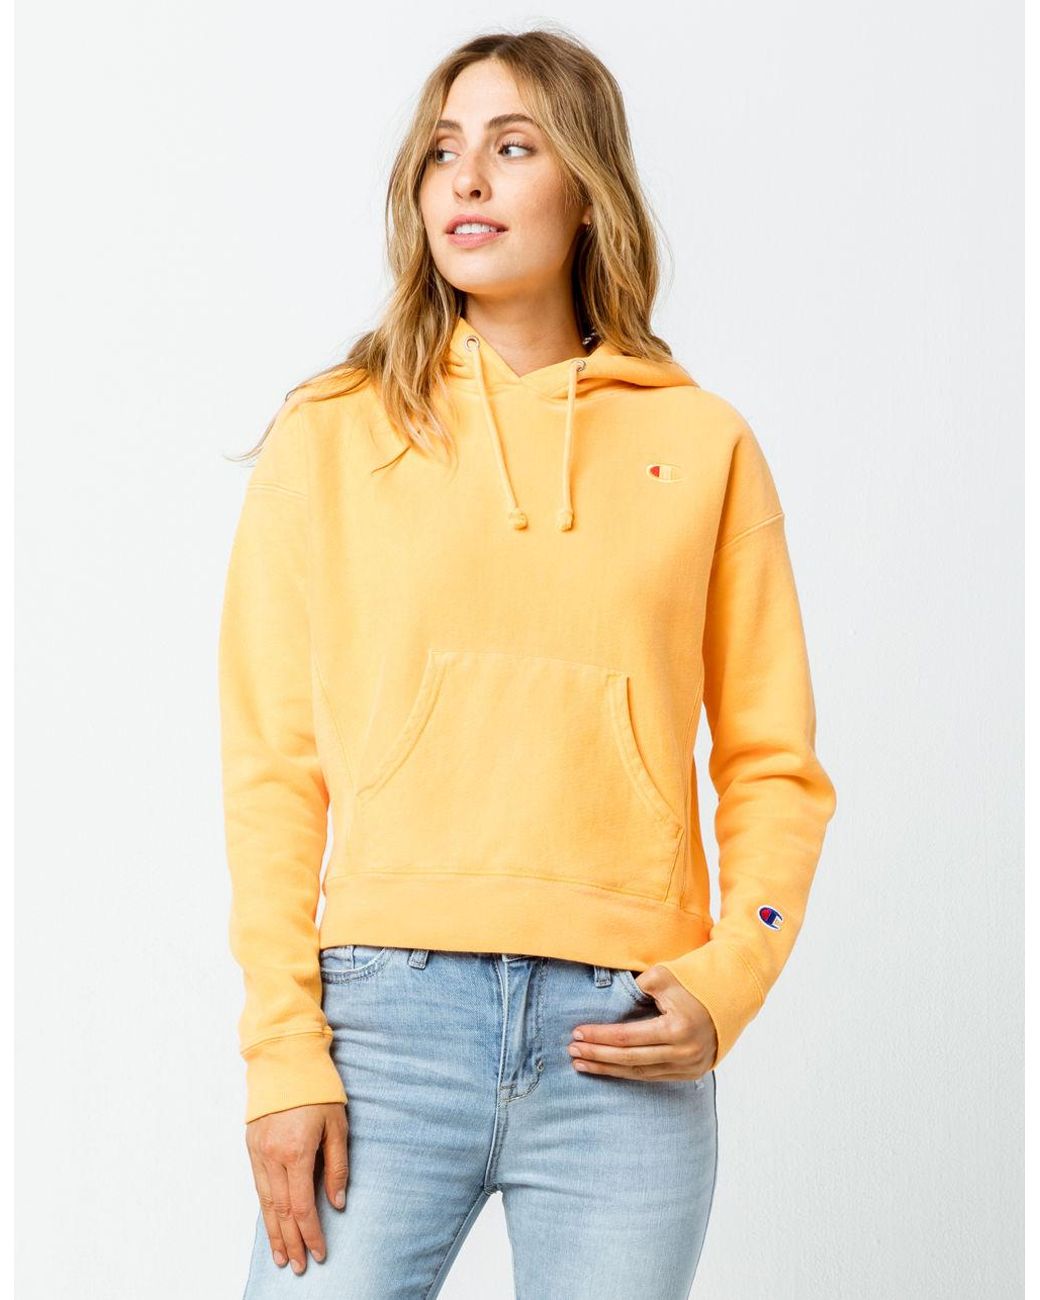 champion sweatshirt womens yellow